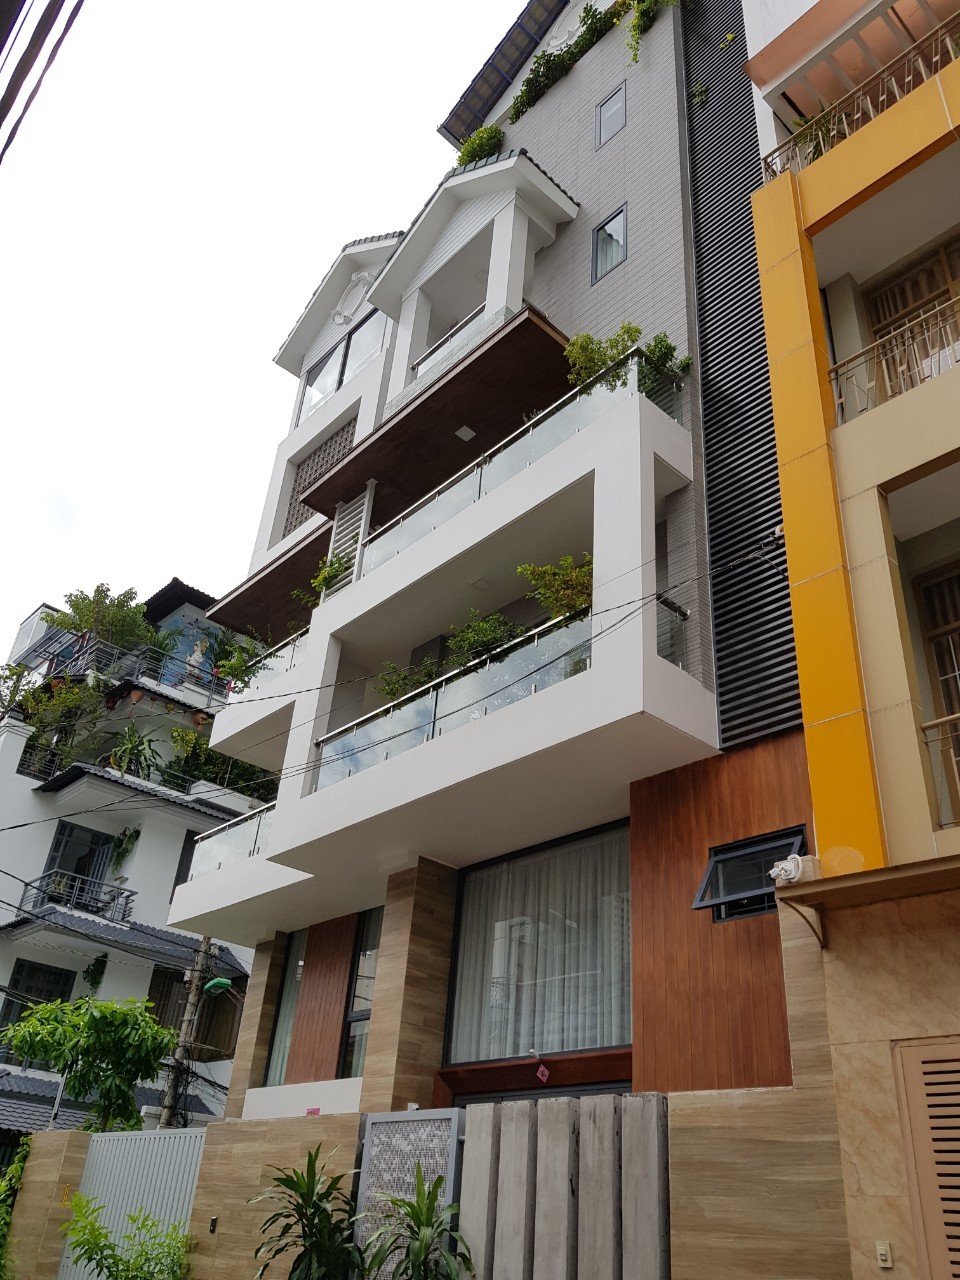 Bán nhà hẻm 8A Thái Văn Lung, phường Bến Nghé, quận 1 (4.7x12m) 4 tầng, cho thuê 80tr/th, giá 24.9 tỷ